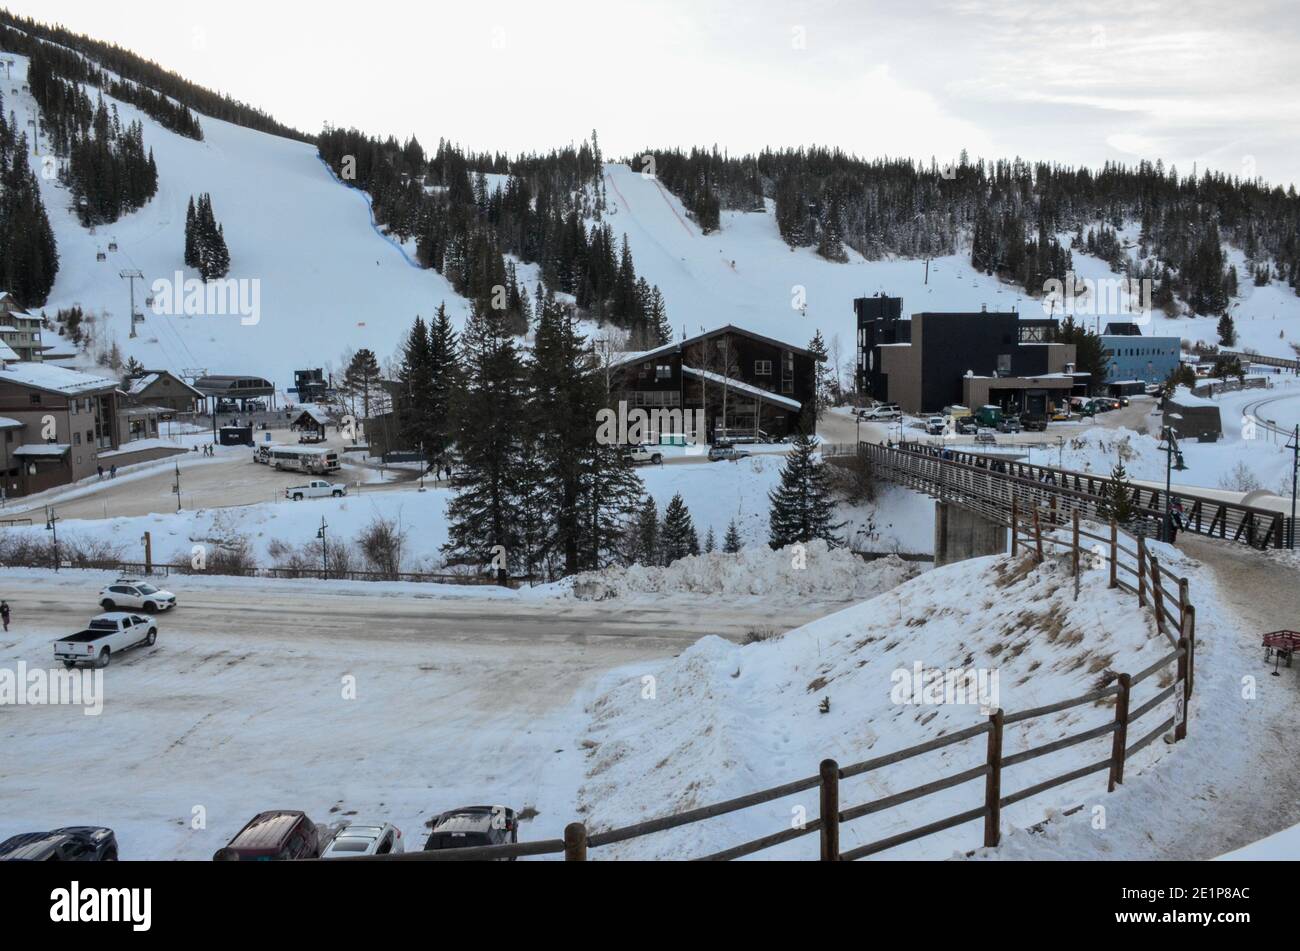 Station de ski Winter Park, Winter Park, Colorado, États-Unis. Décembre 2020. Banque D'Images